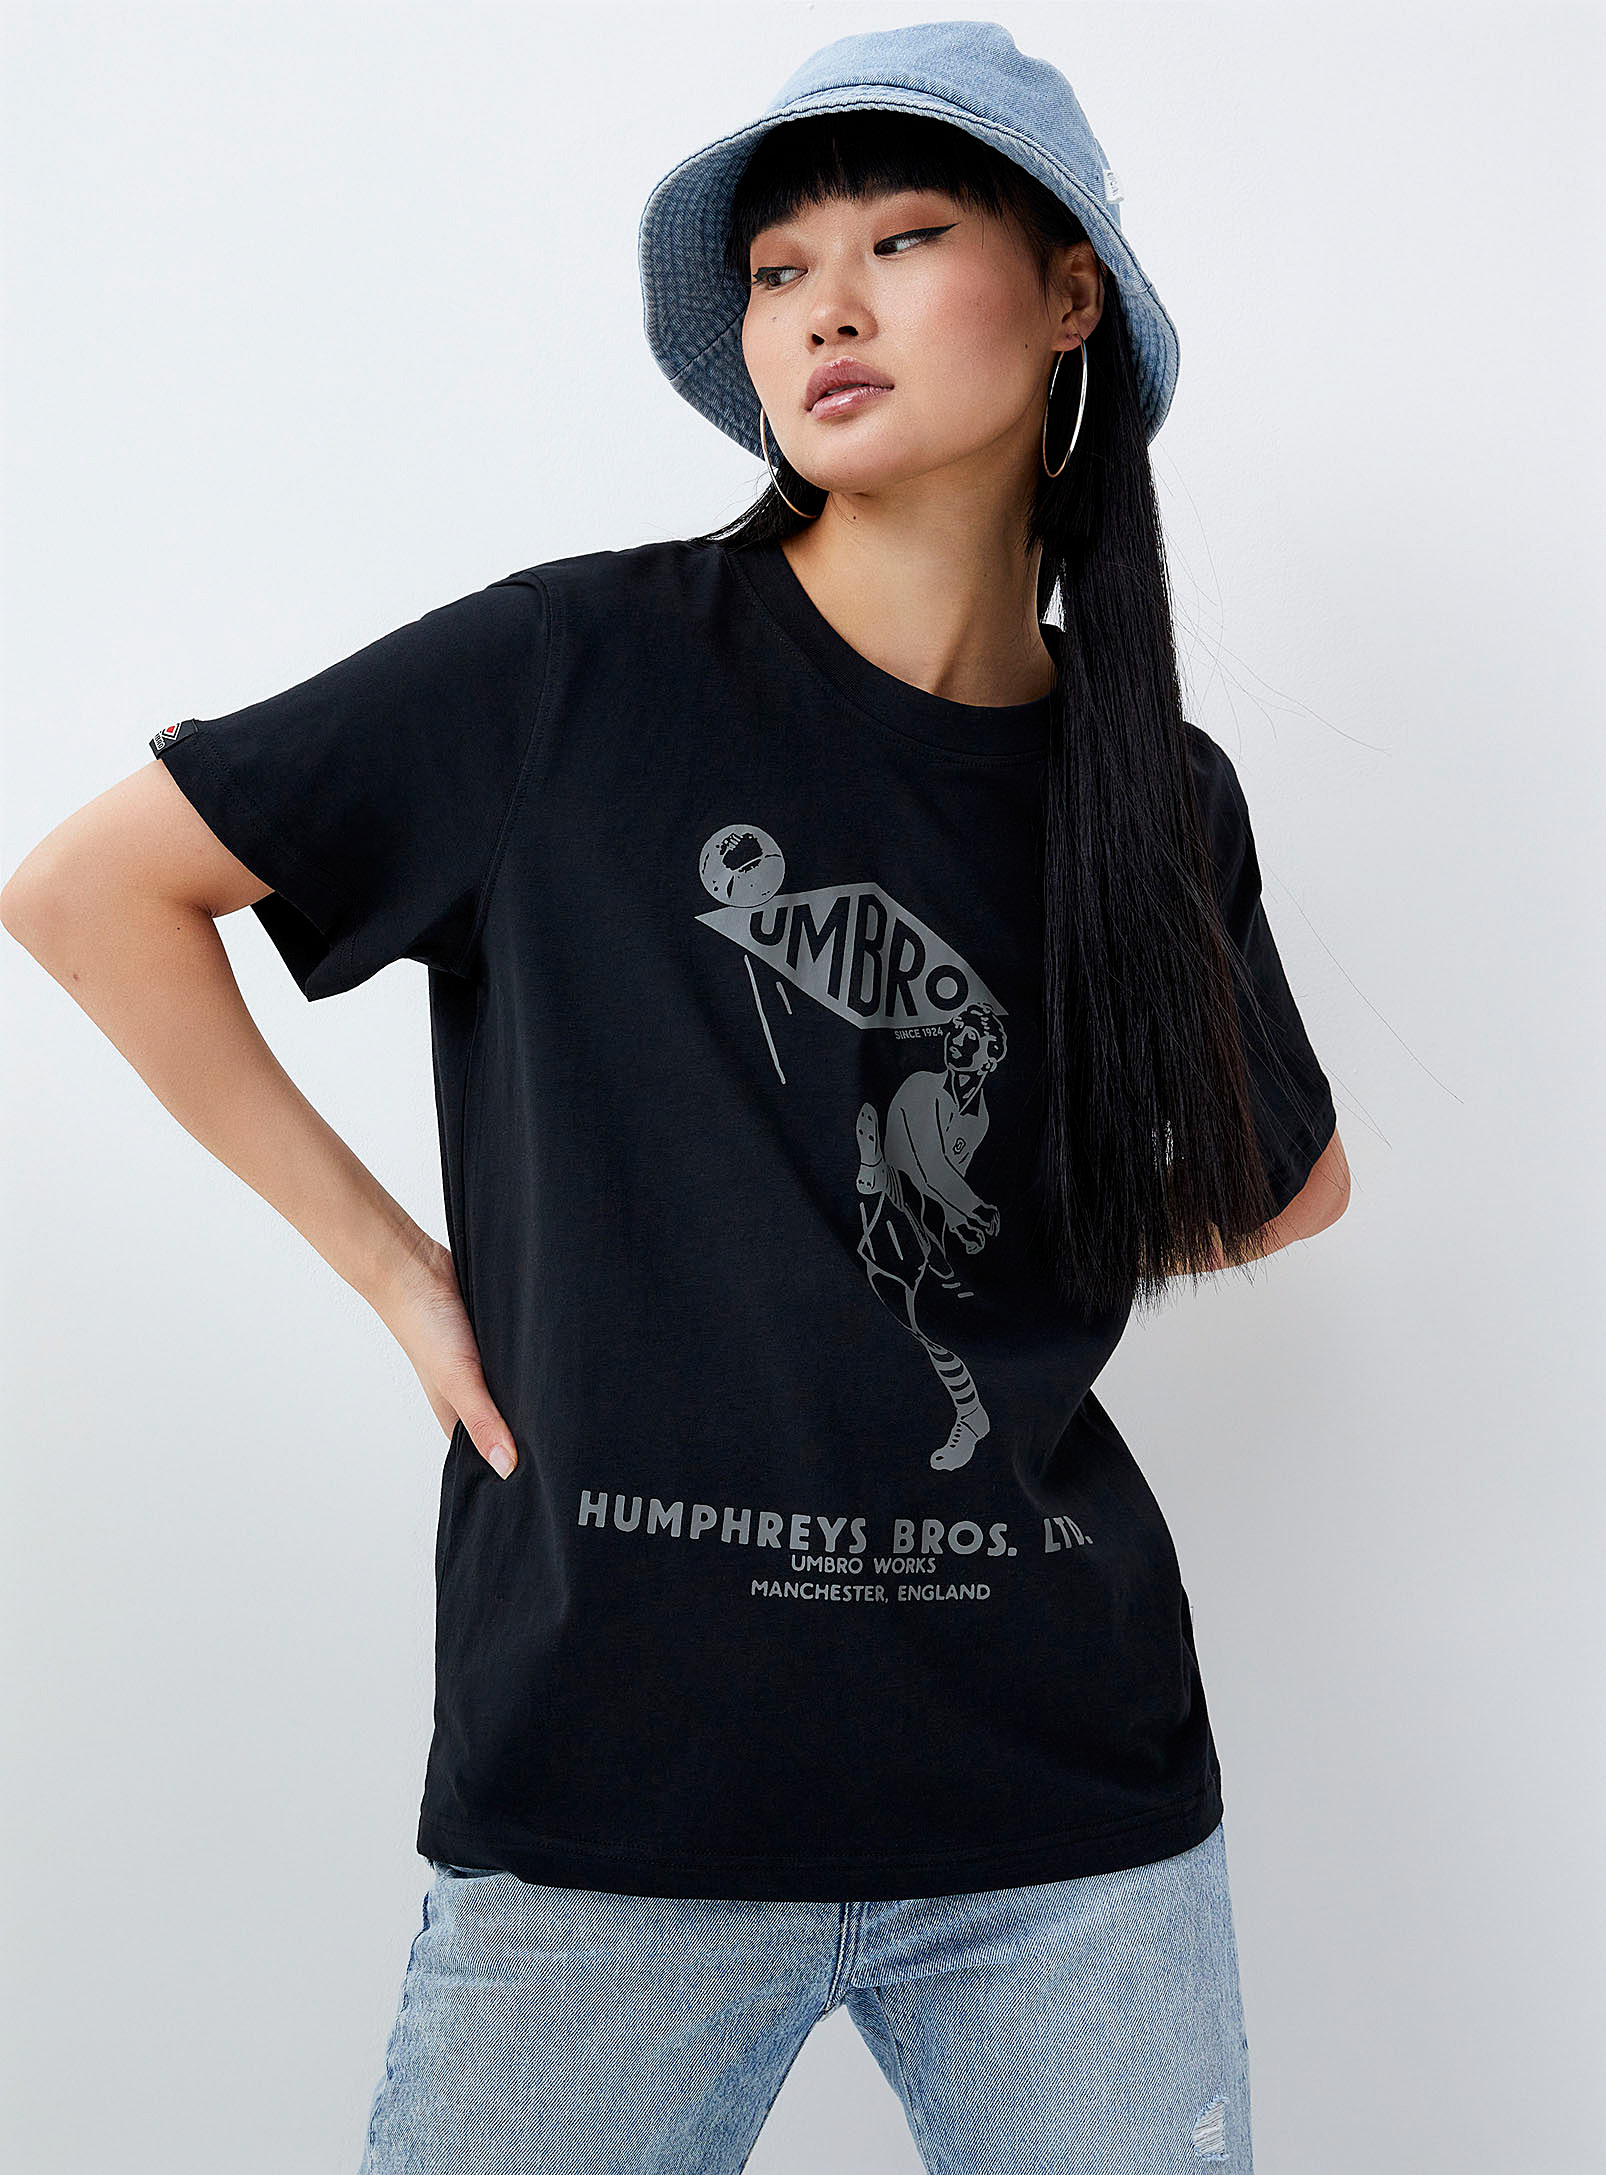 Umbro - Women's Humphreys soccer Tee Shirt